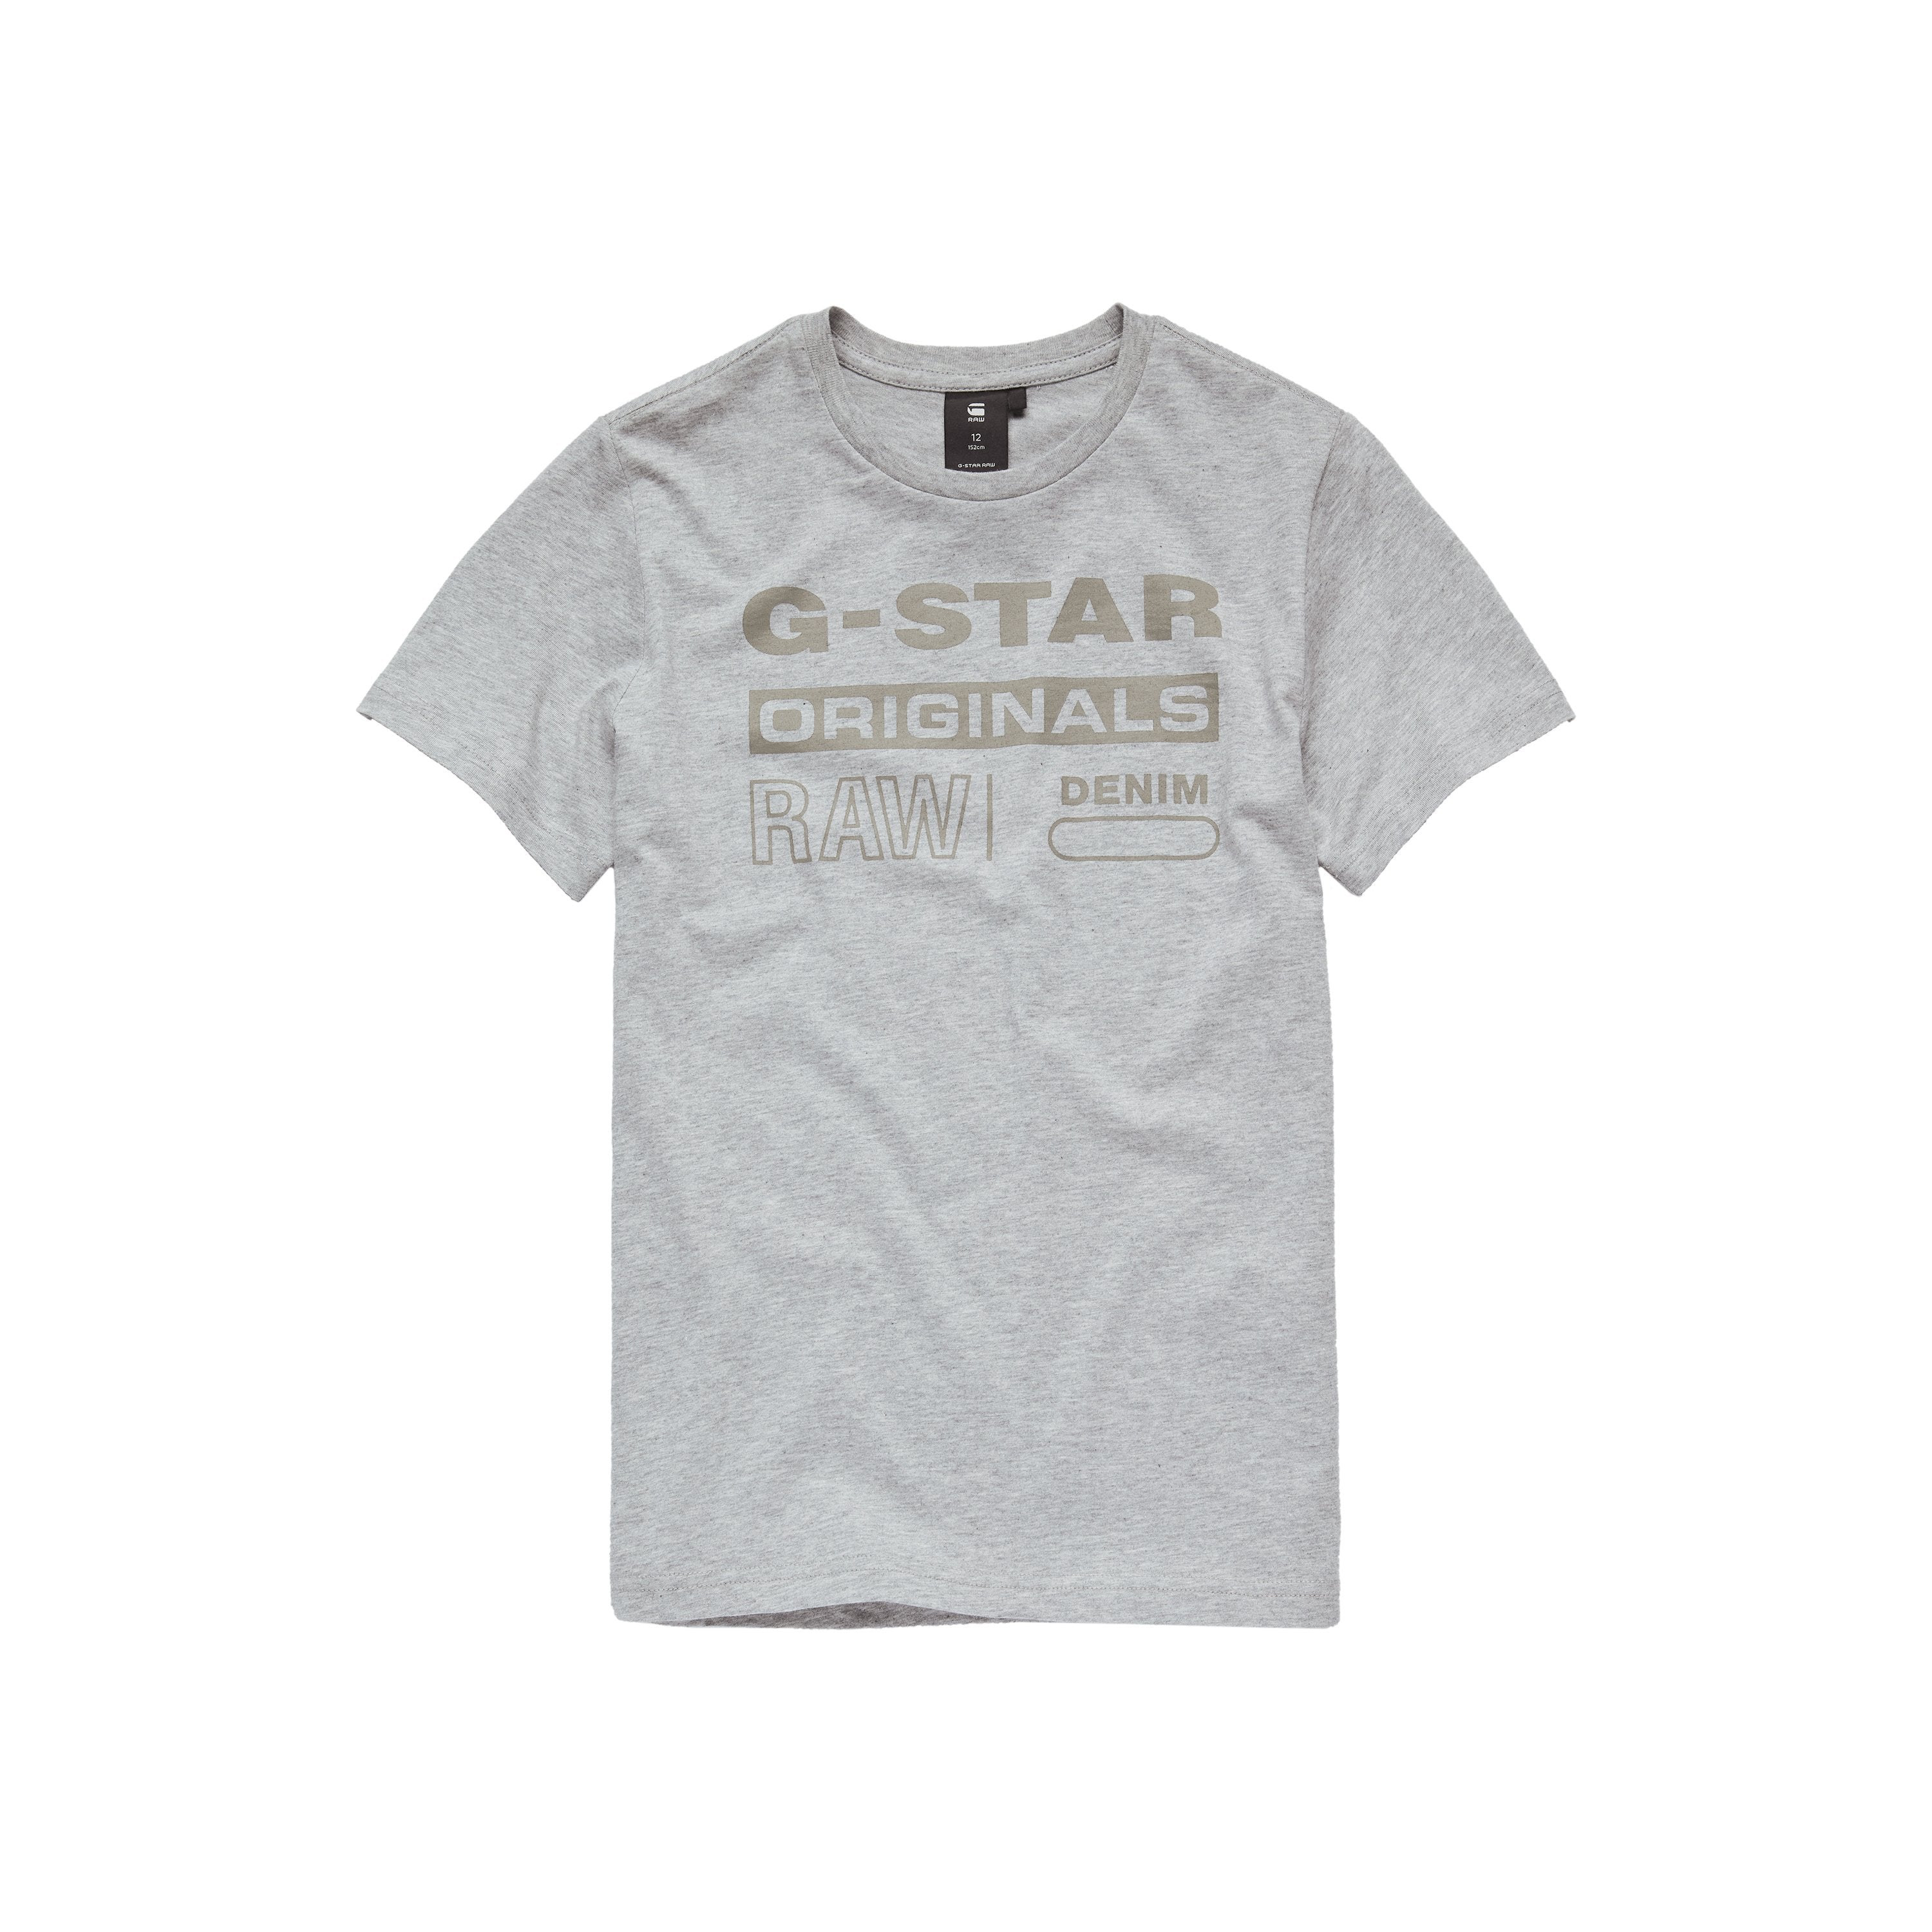 Jongens Tee Shirt van G-Star Raw in de kleur Black in maat 128.